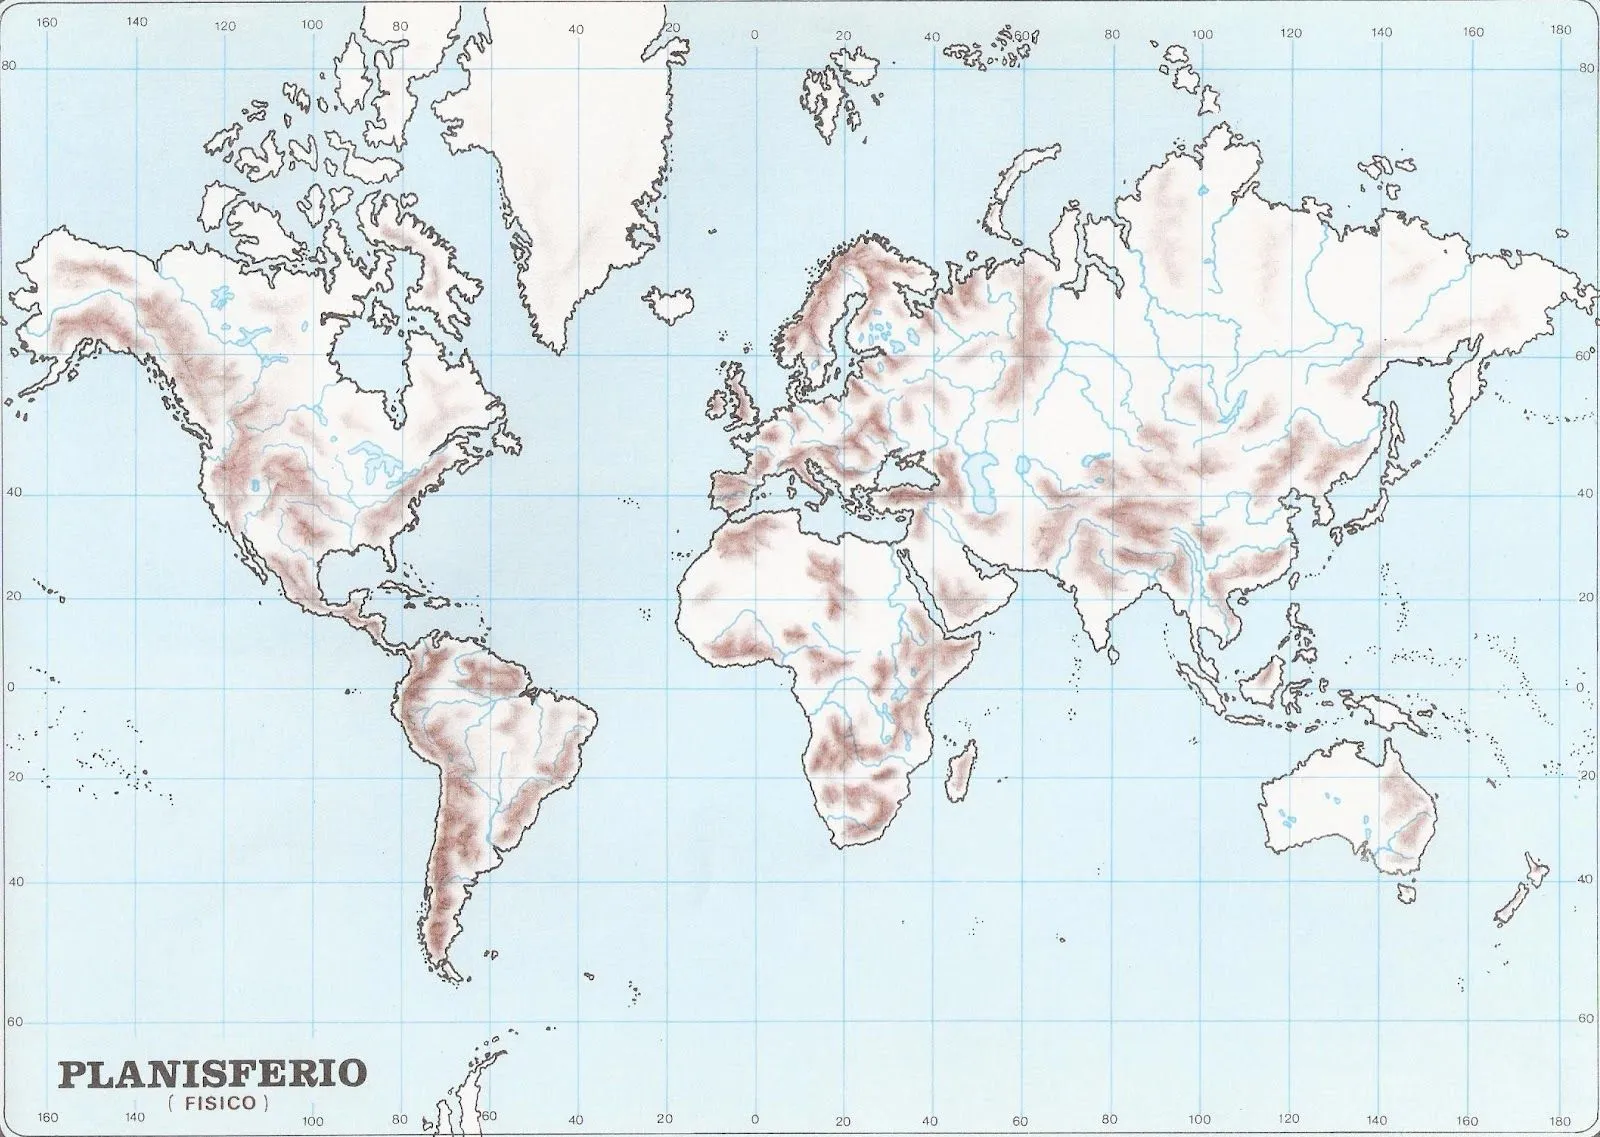 Mapamundi, 100 mapas del mundo para imprimir y descargar gratis